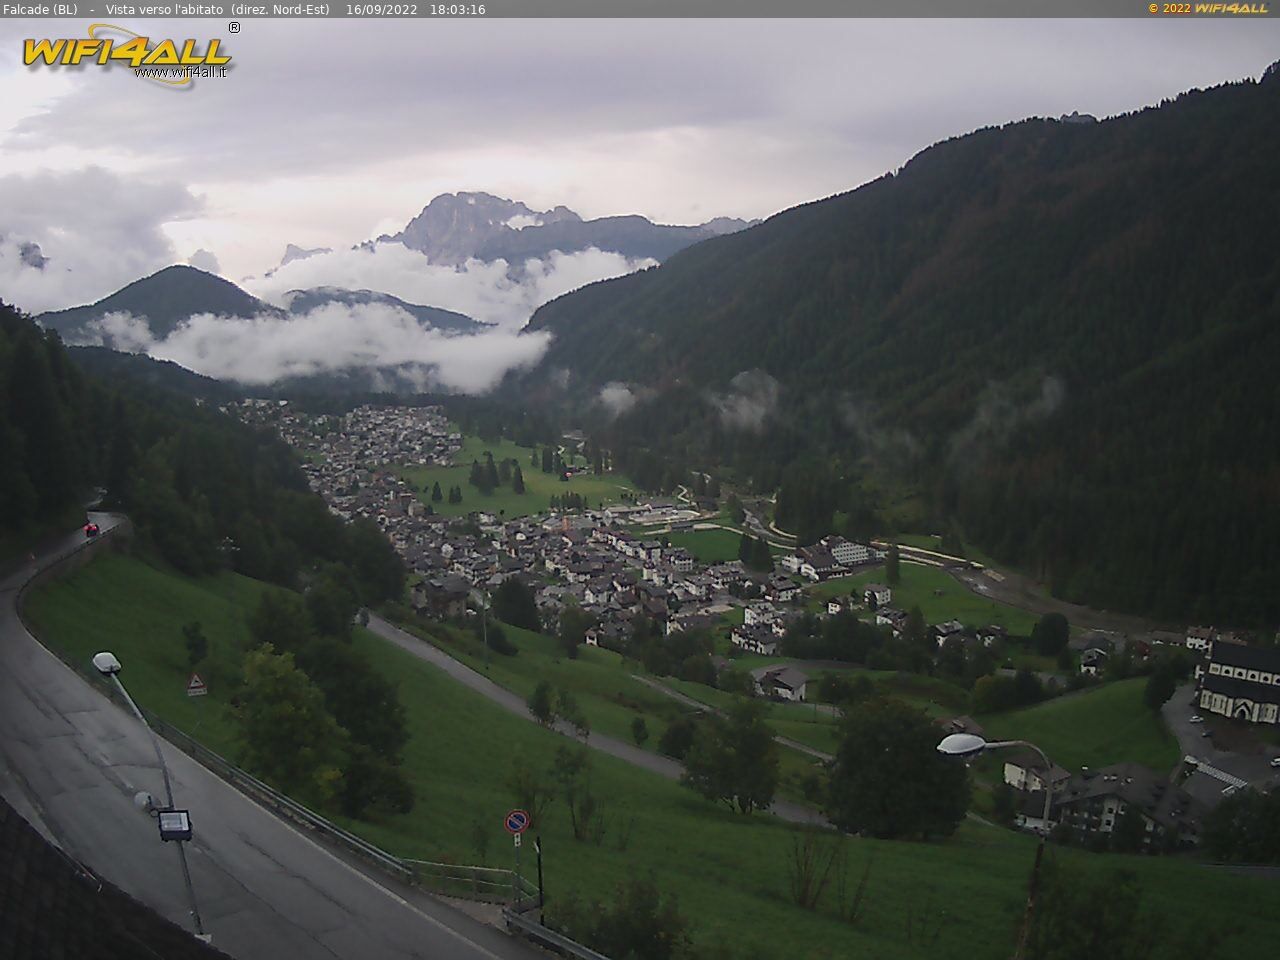 webcam  Falacade (BL, 1148 m), webcam provincia di Belluno, webcam Trentino-Alto Adige, Webcam Alpi - Trentino-Alto Adige